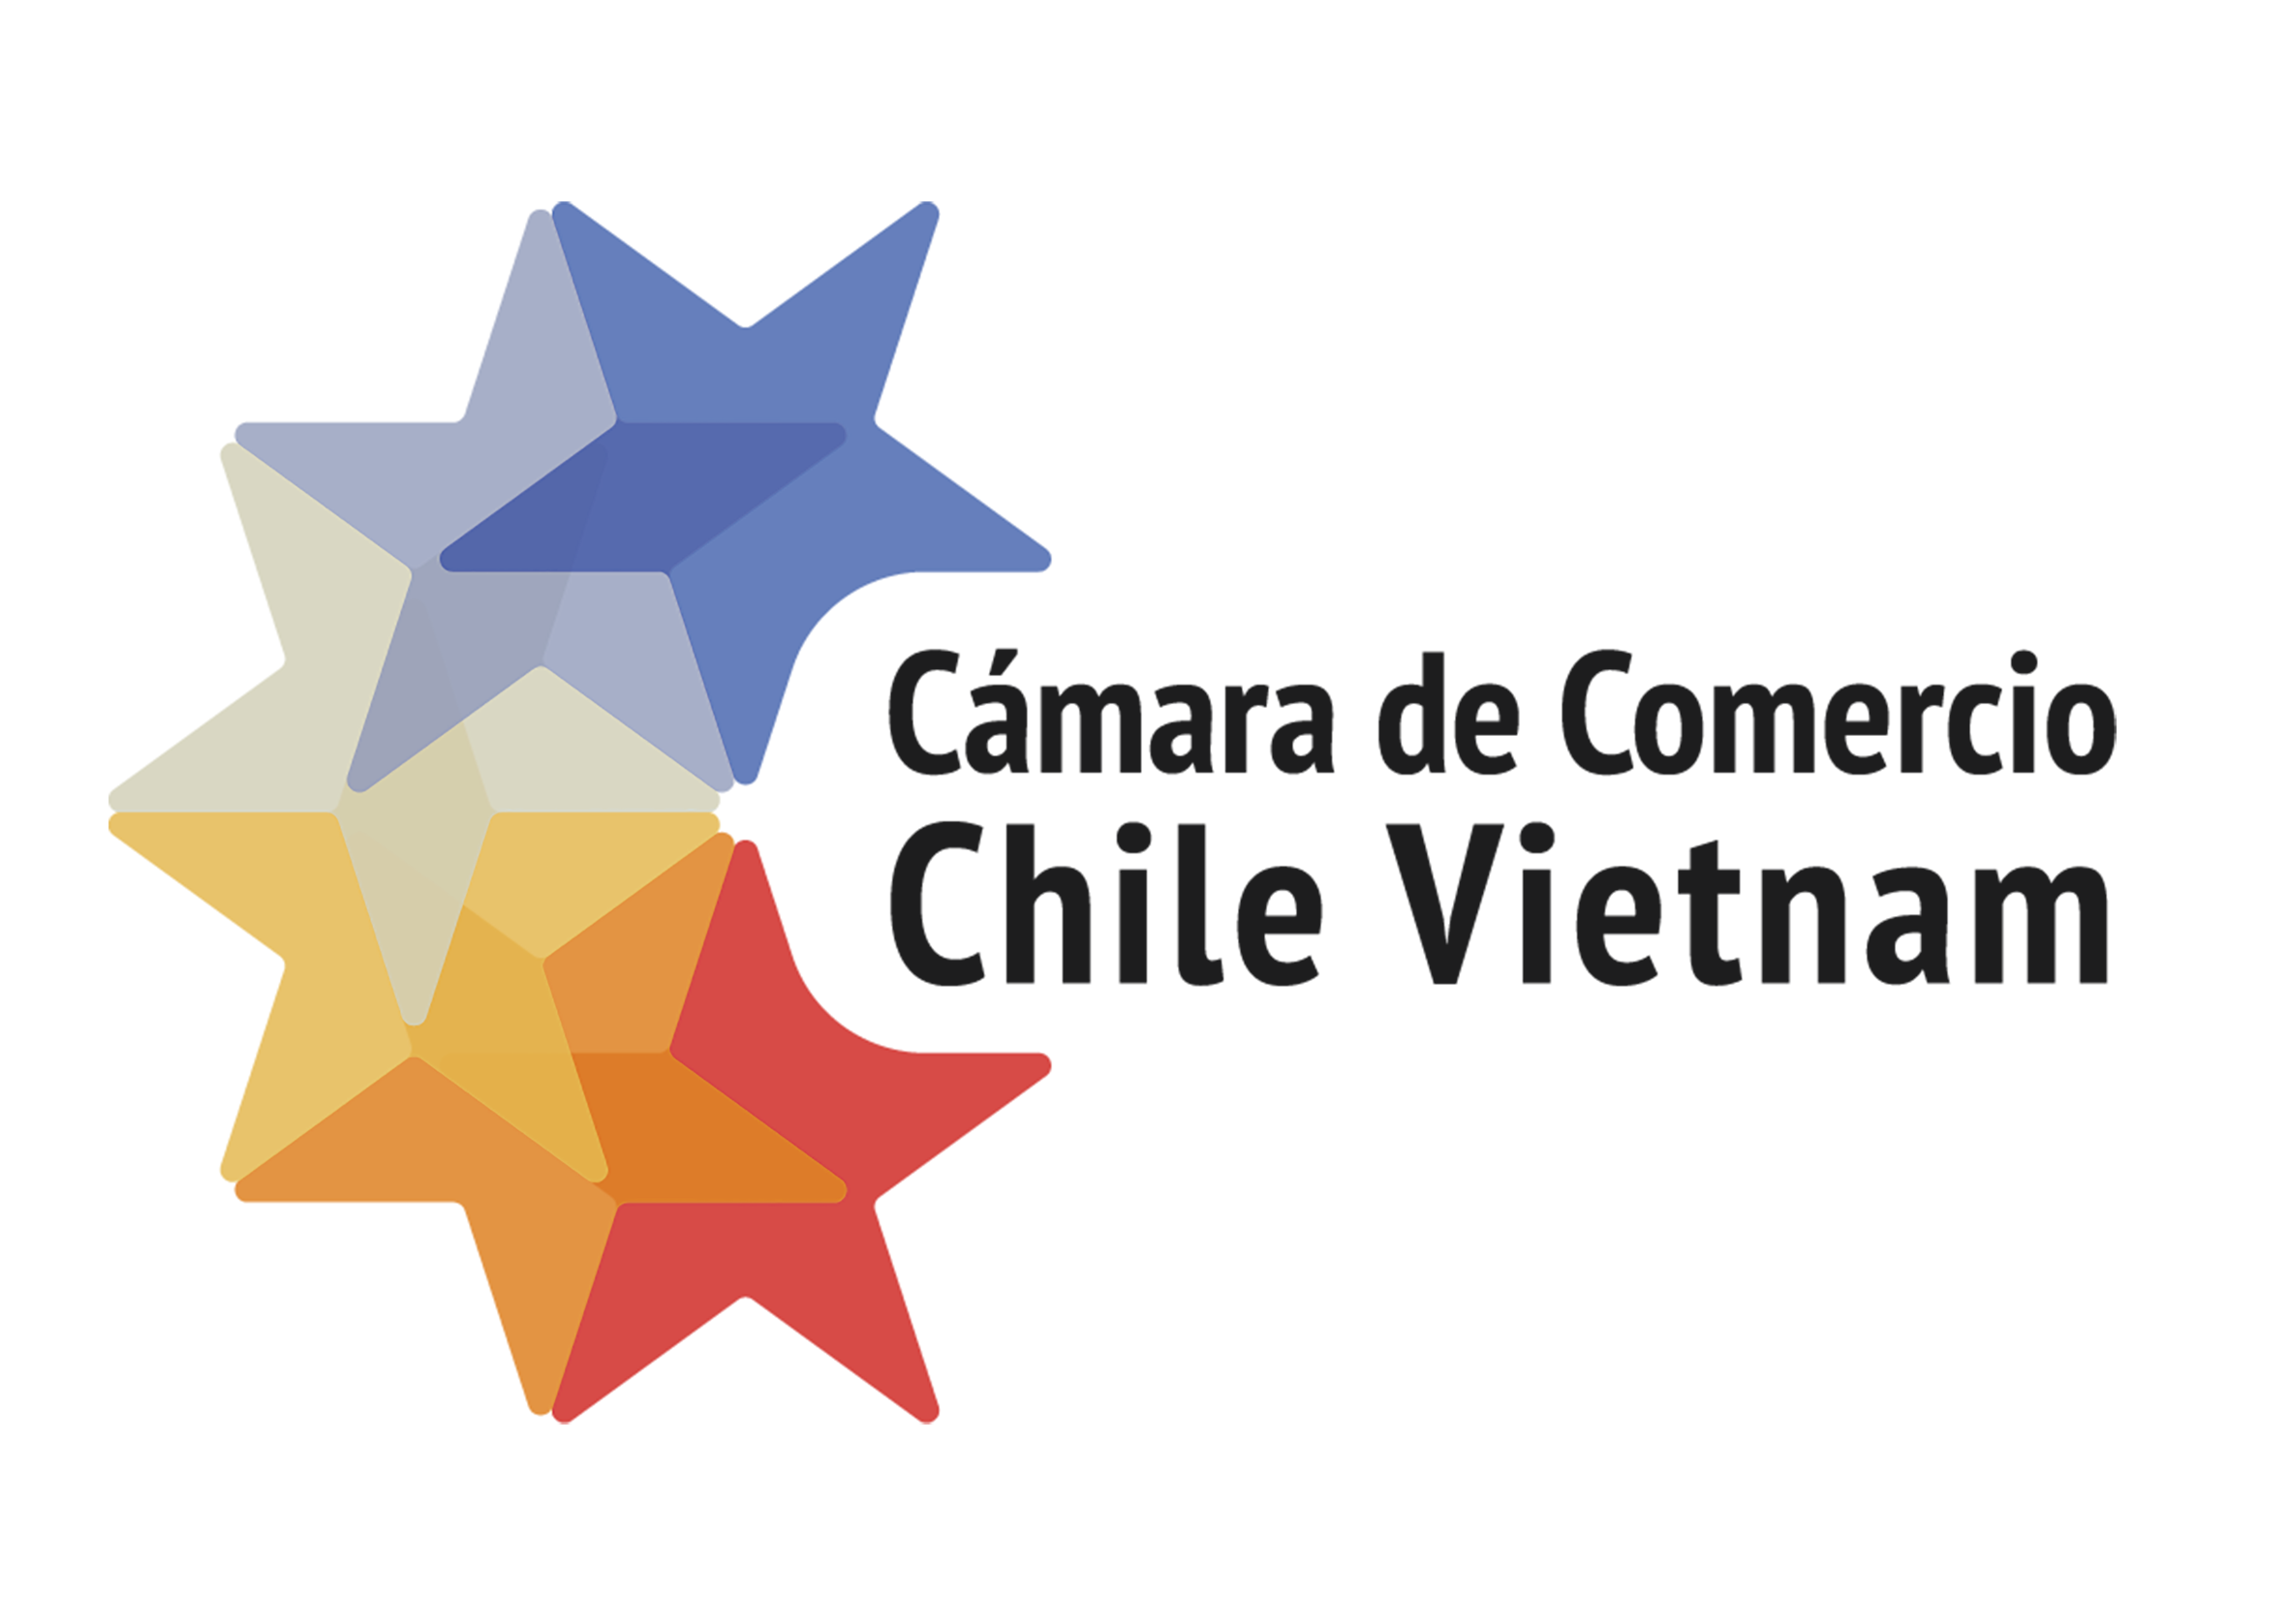 Camara de Comercio Chile-Vietnam